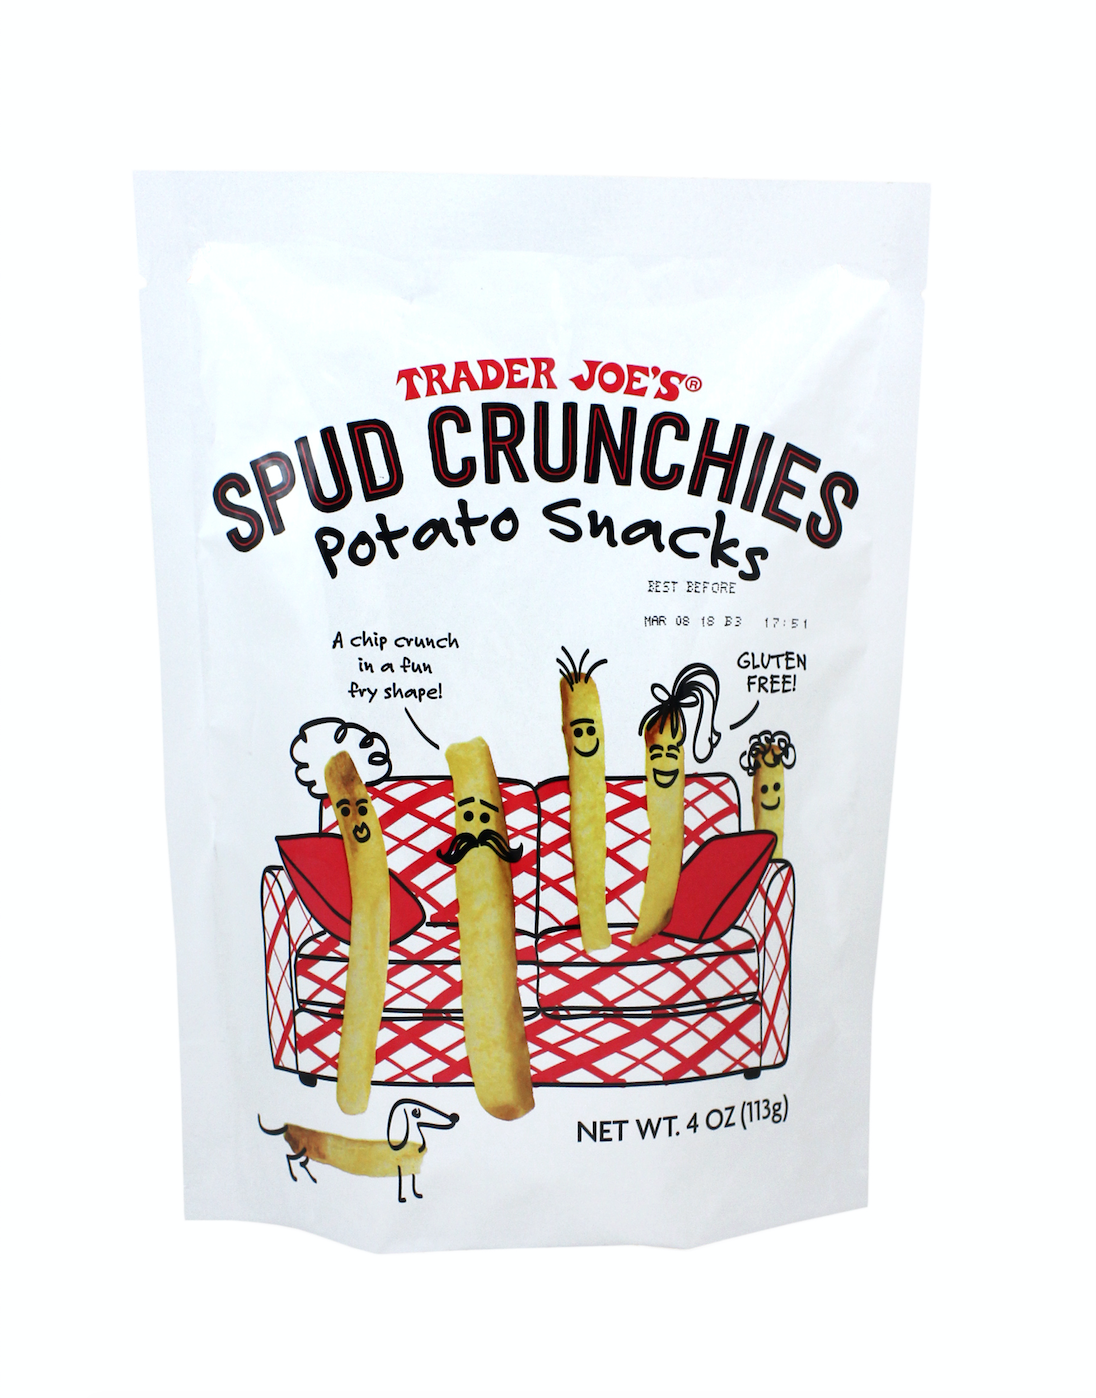 Estoy obsesionado con Trader Joe’s Spud Crunchies, y se está convirtiendo en un problema